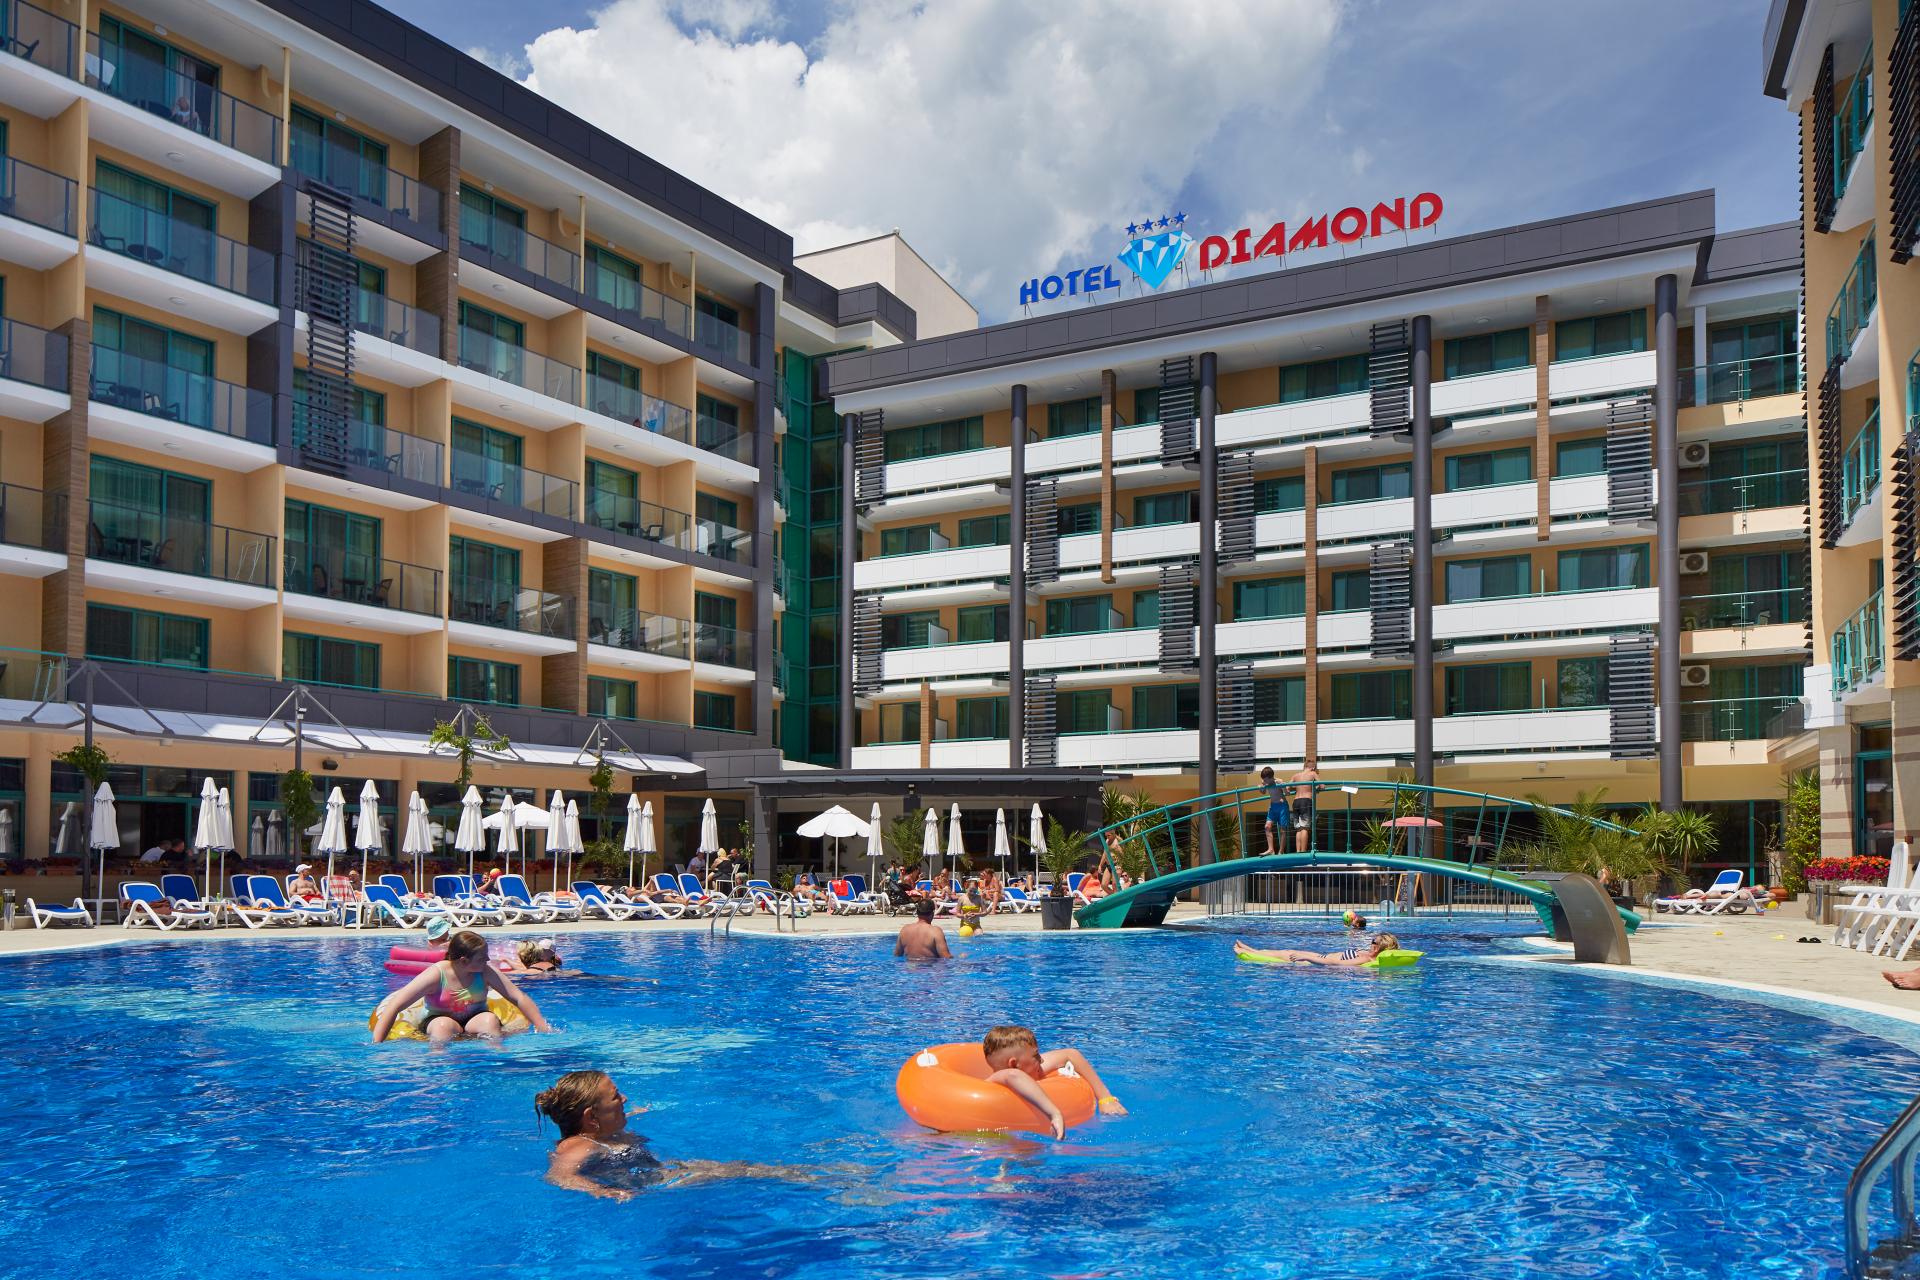 Hotel Diamond - Bułgaria